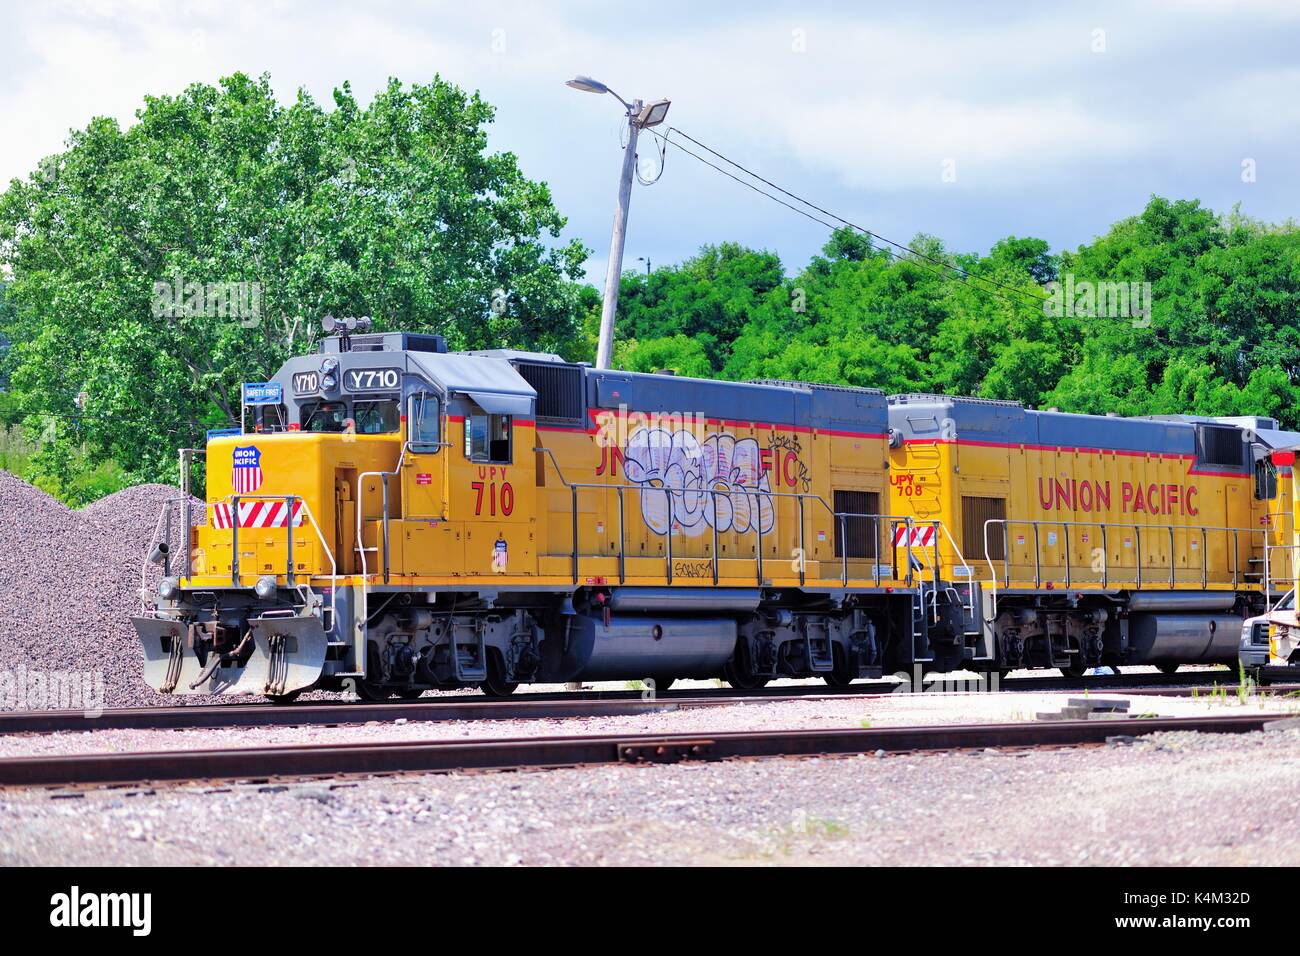 Ein paar der Union Pacific Yard Lokomotiven im Leerlauf in der Nähe von Getreidesilos und Waukegan Harbor in Waukegan, Illinois, USA. Stockfoto